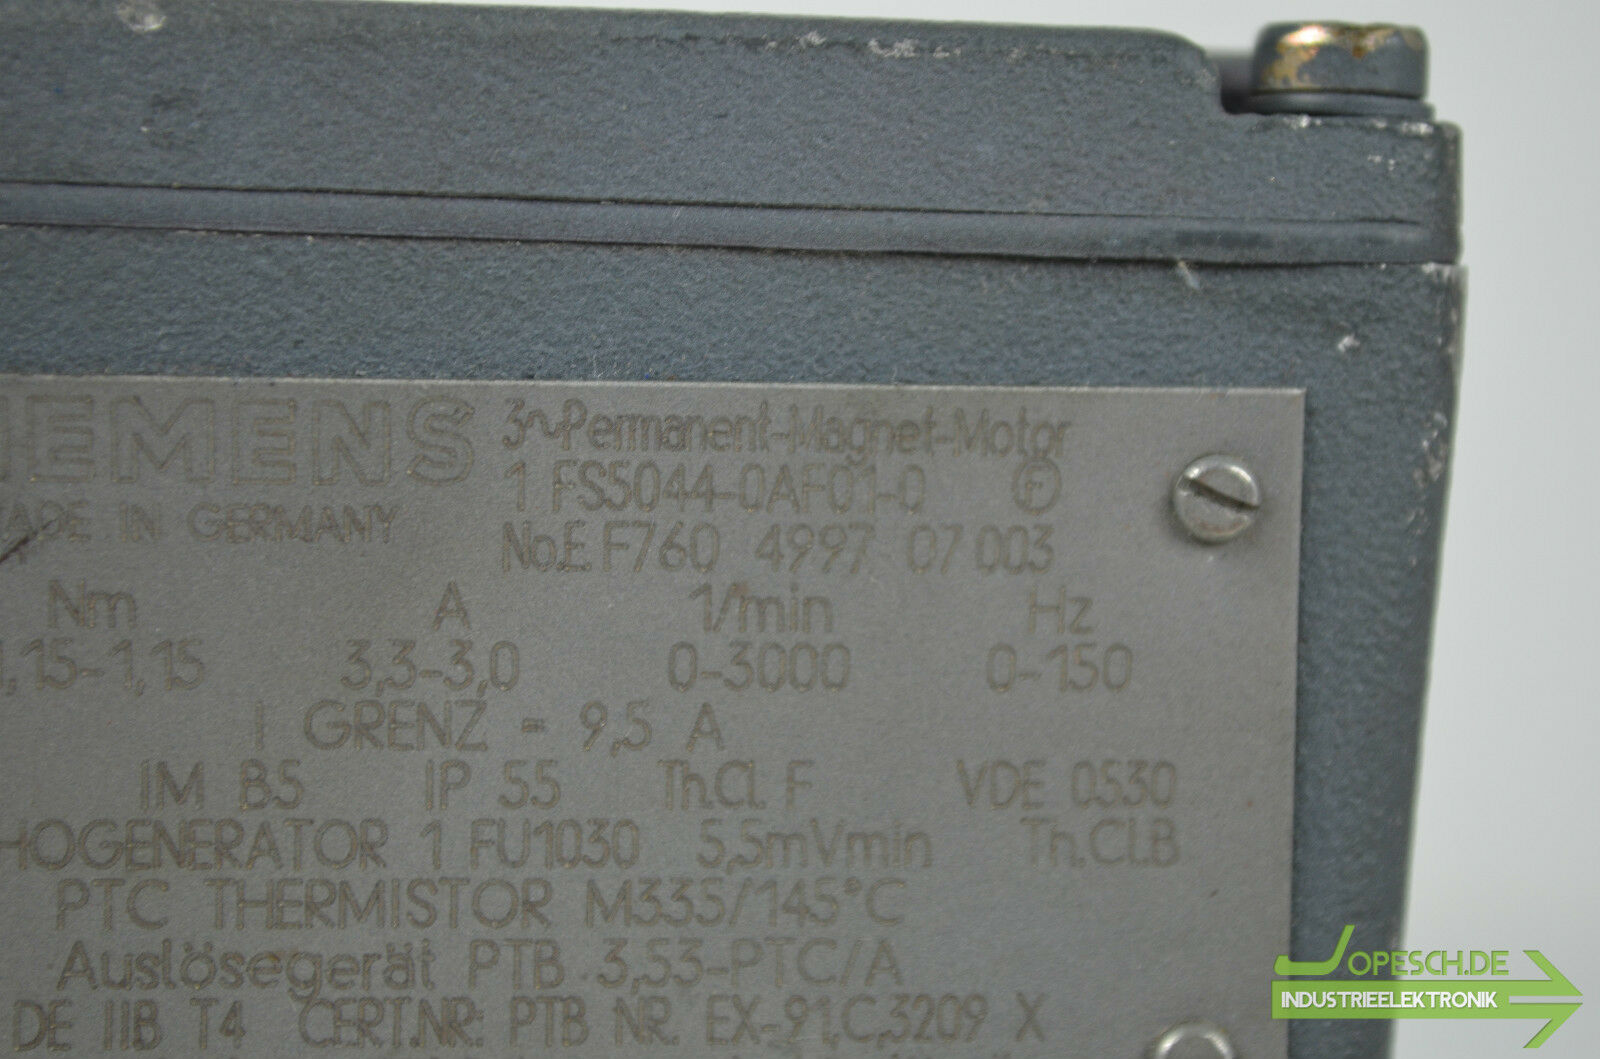 Siemens 3~ Permanent-Magnet-Motor 1FS5044-0AF01-0